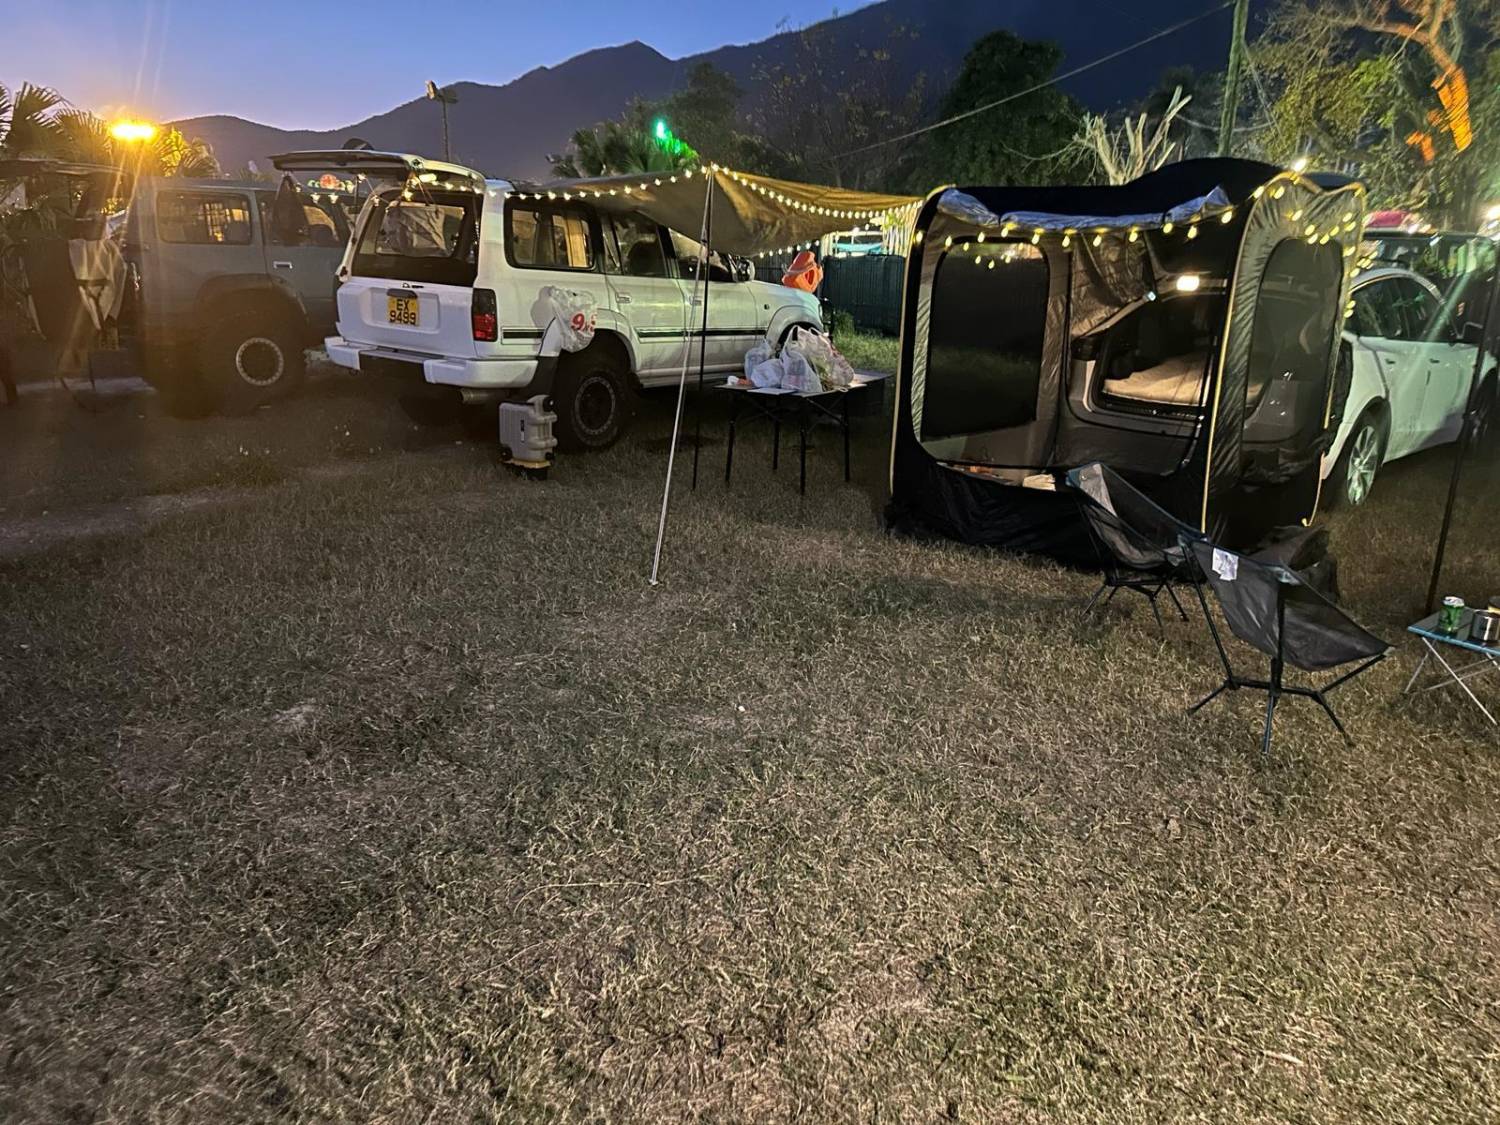 龍 • Home - 大埔龍尾灘露營車 & BBQ露營屋 【Aulace Nature】Lung.HOME Car Camping/Camping (Bring your own tent/rent a tent) 5